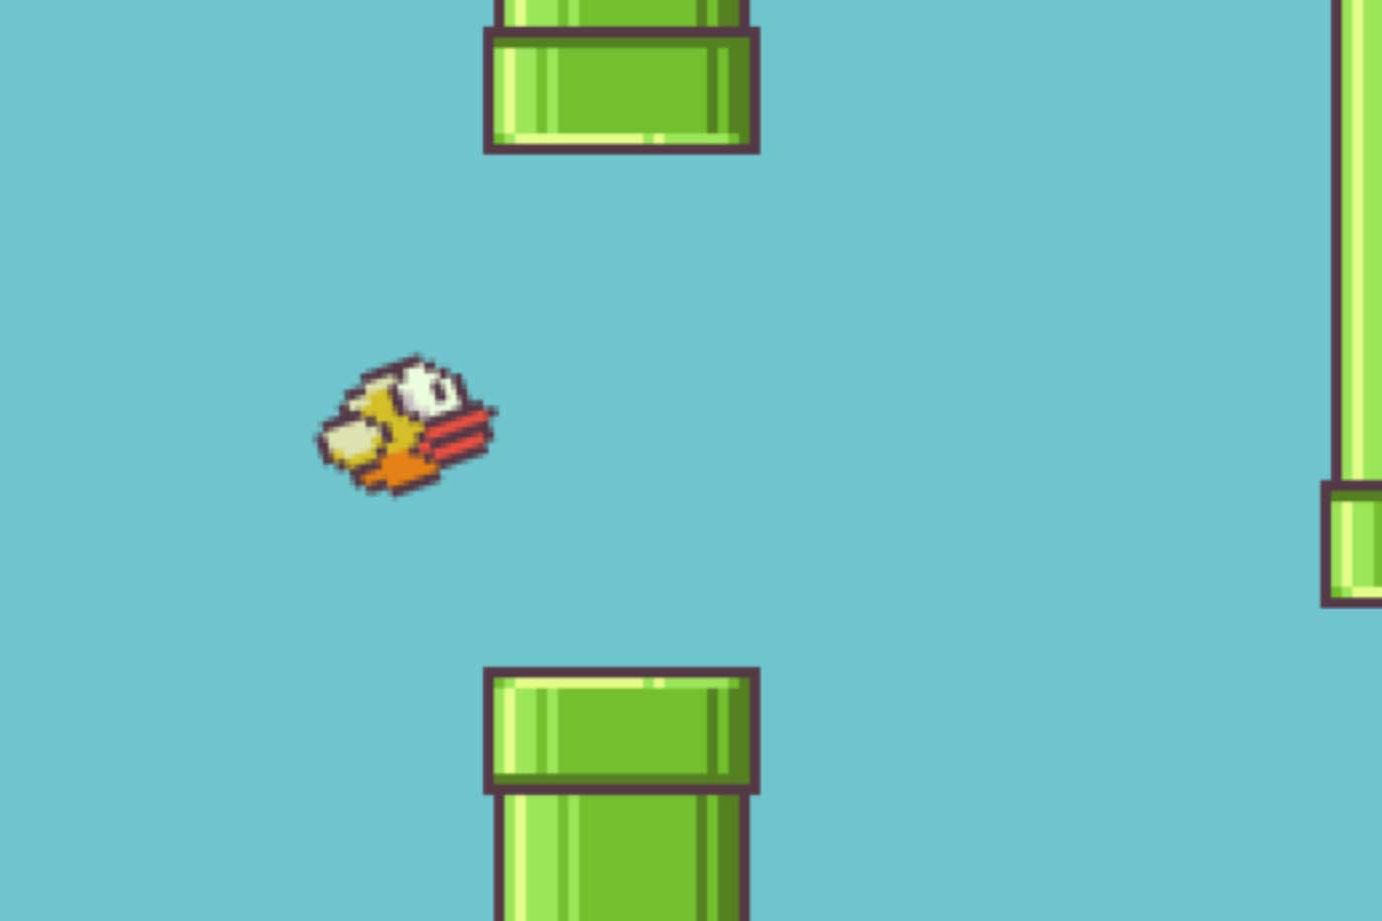 R.I.P., Flappy Bird: 2013-2014